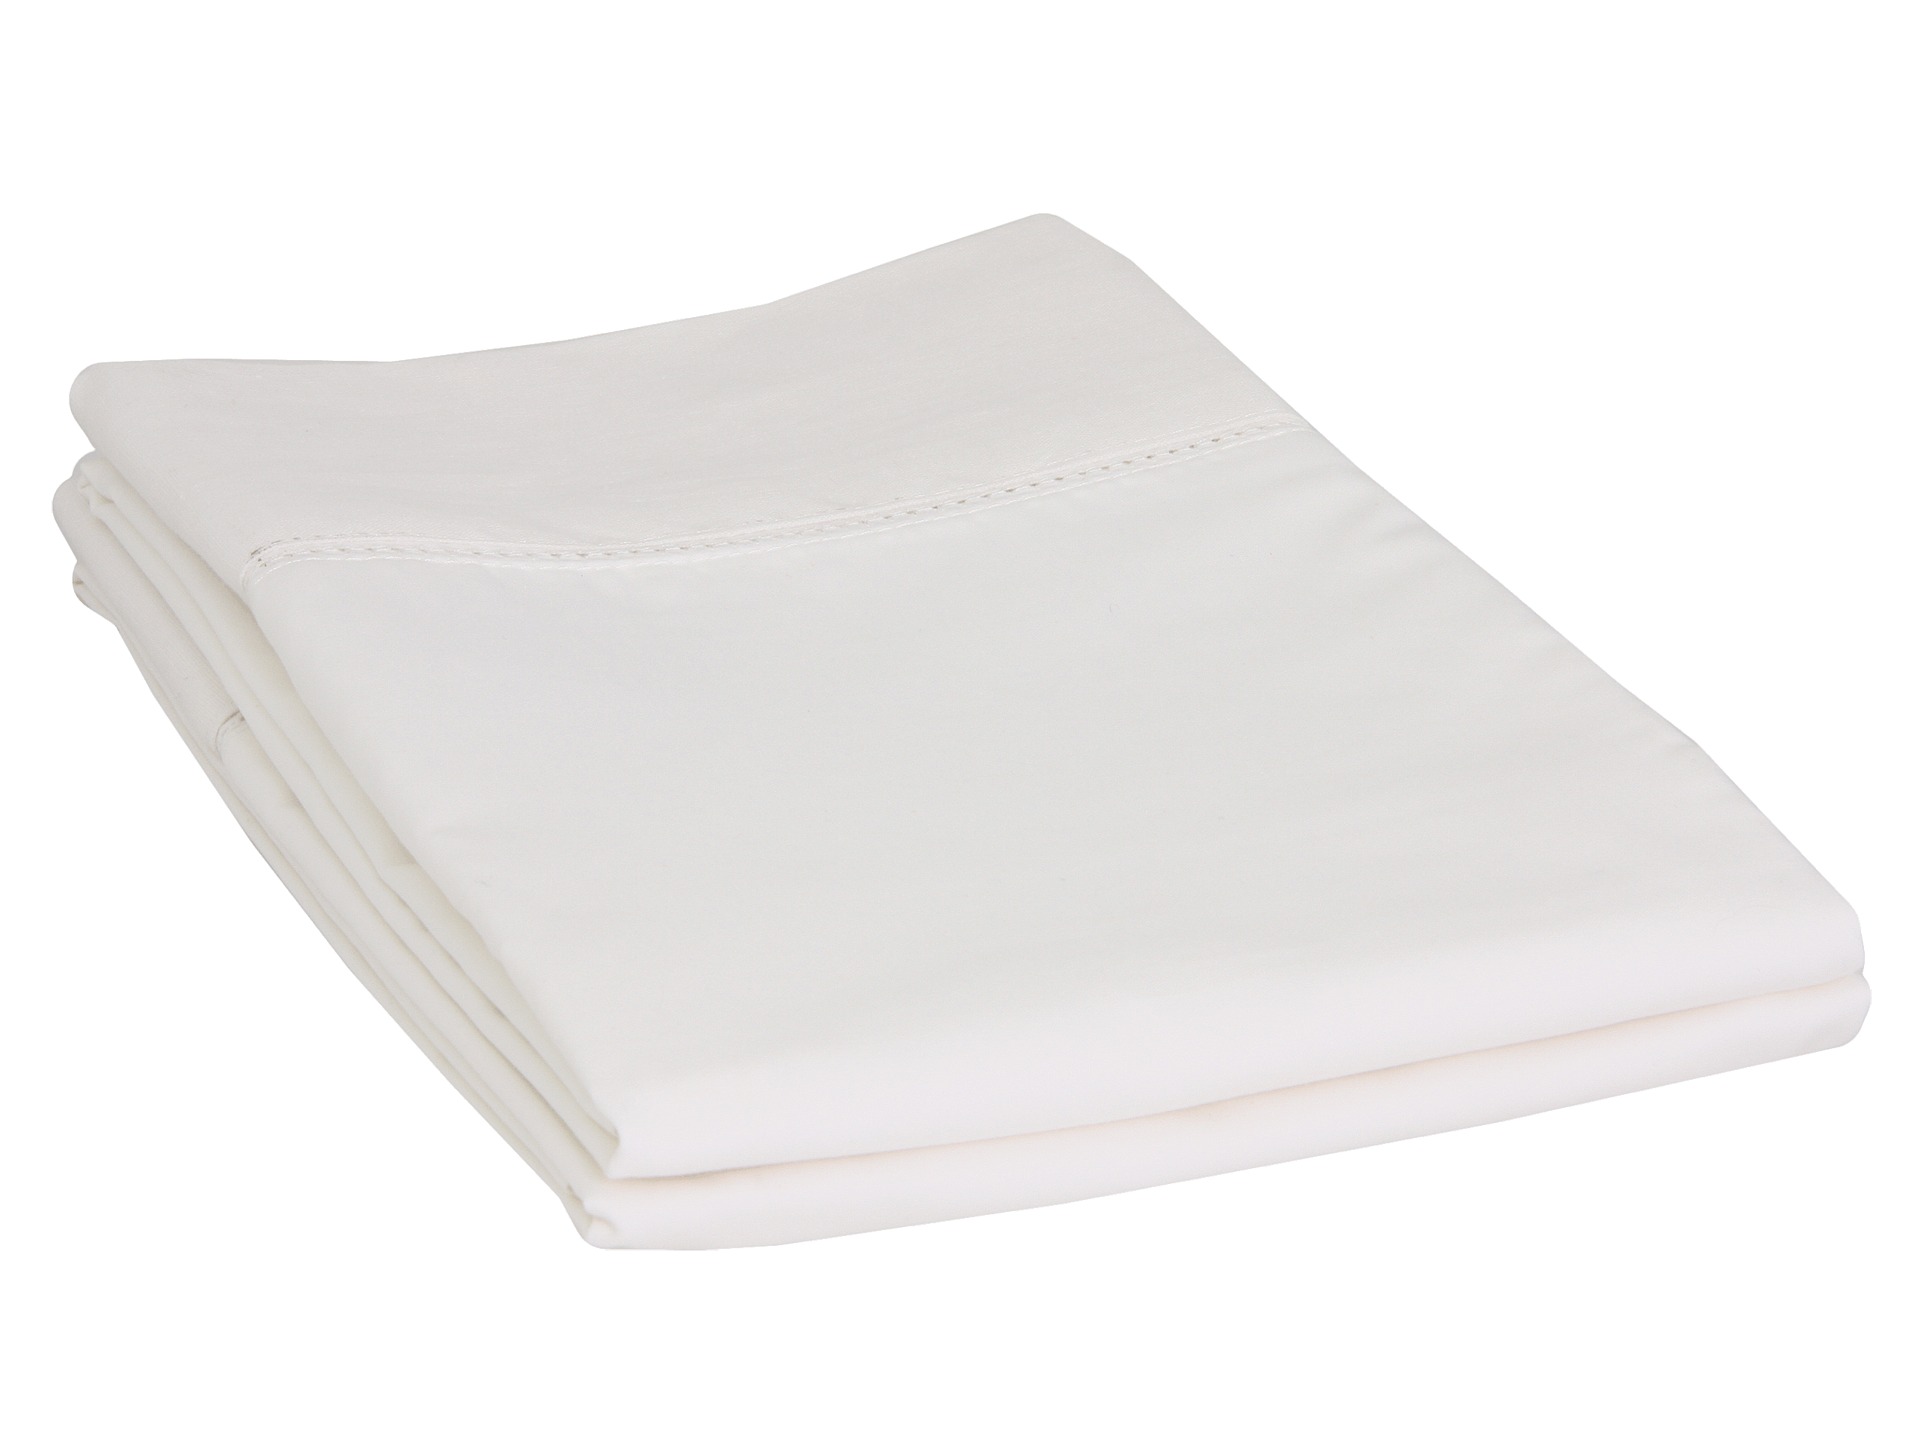 Blissliving Home Mayfair Standard Pillow Cases (2pc)